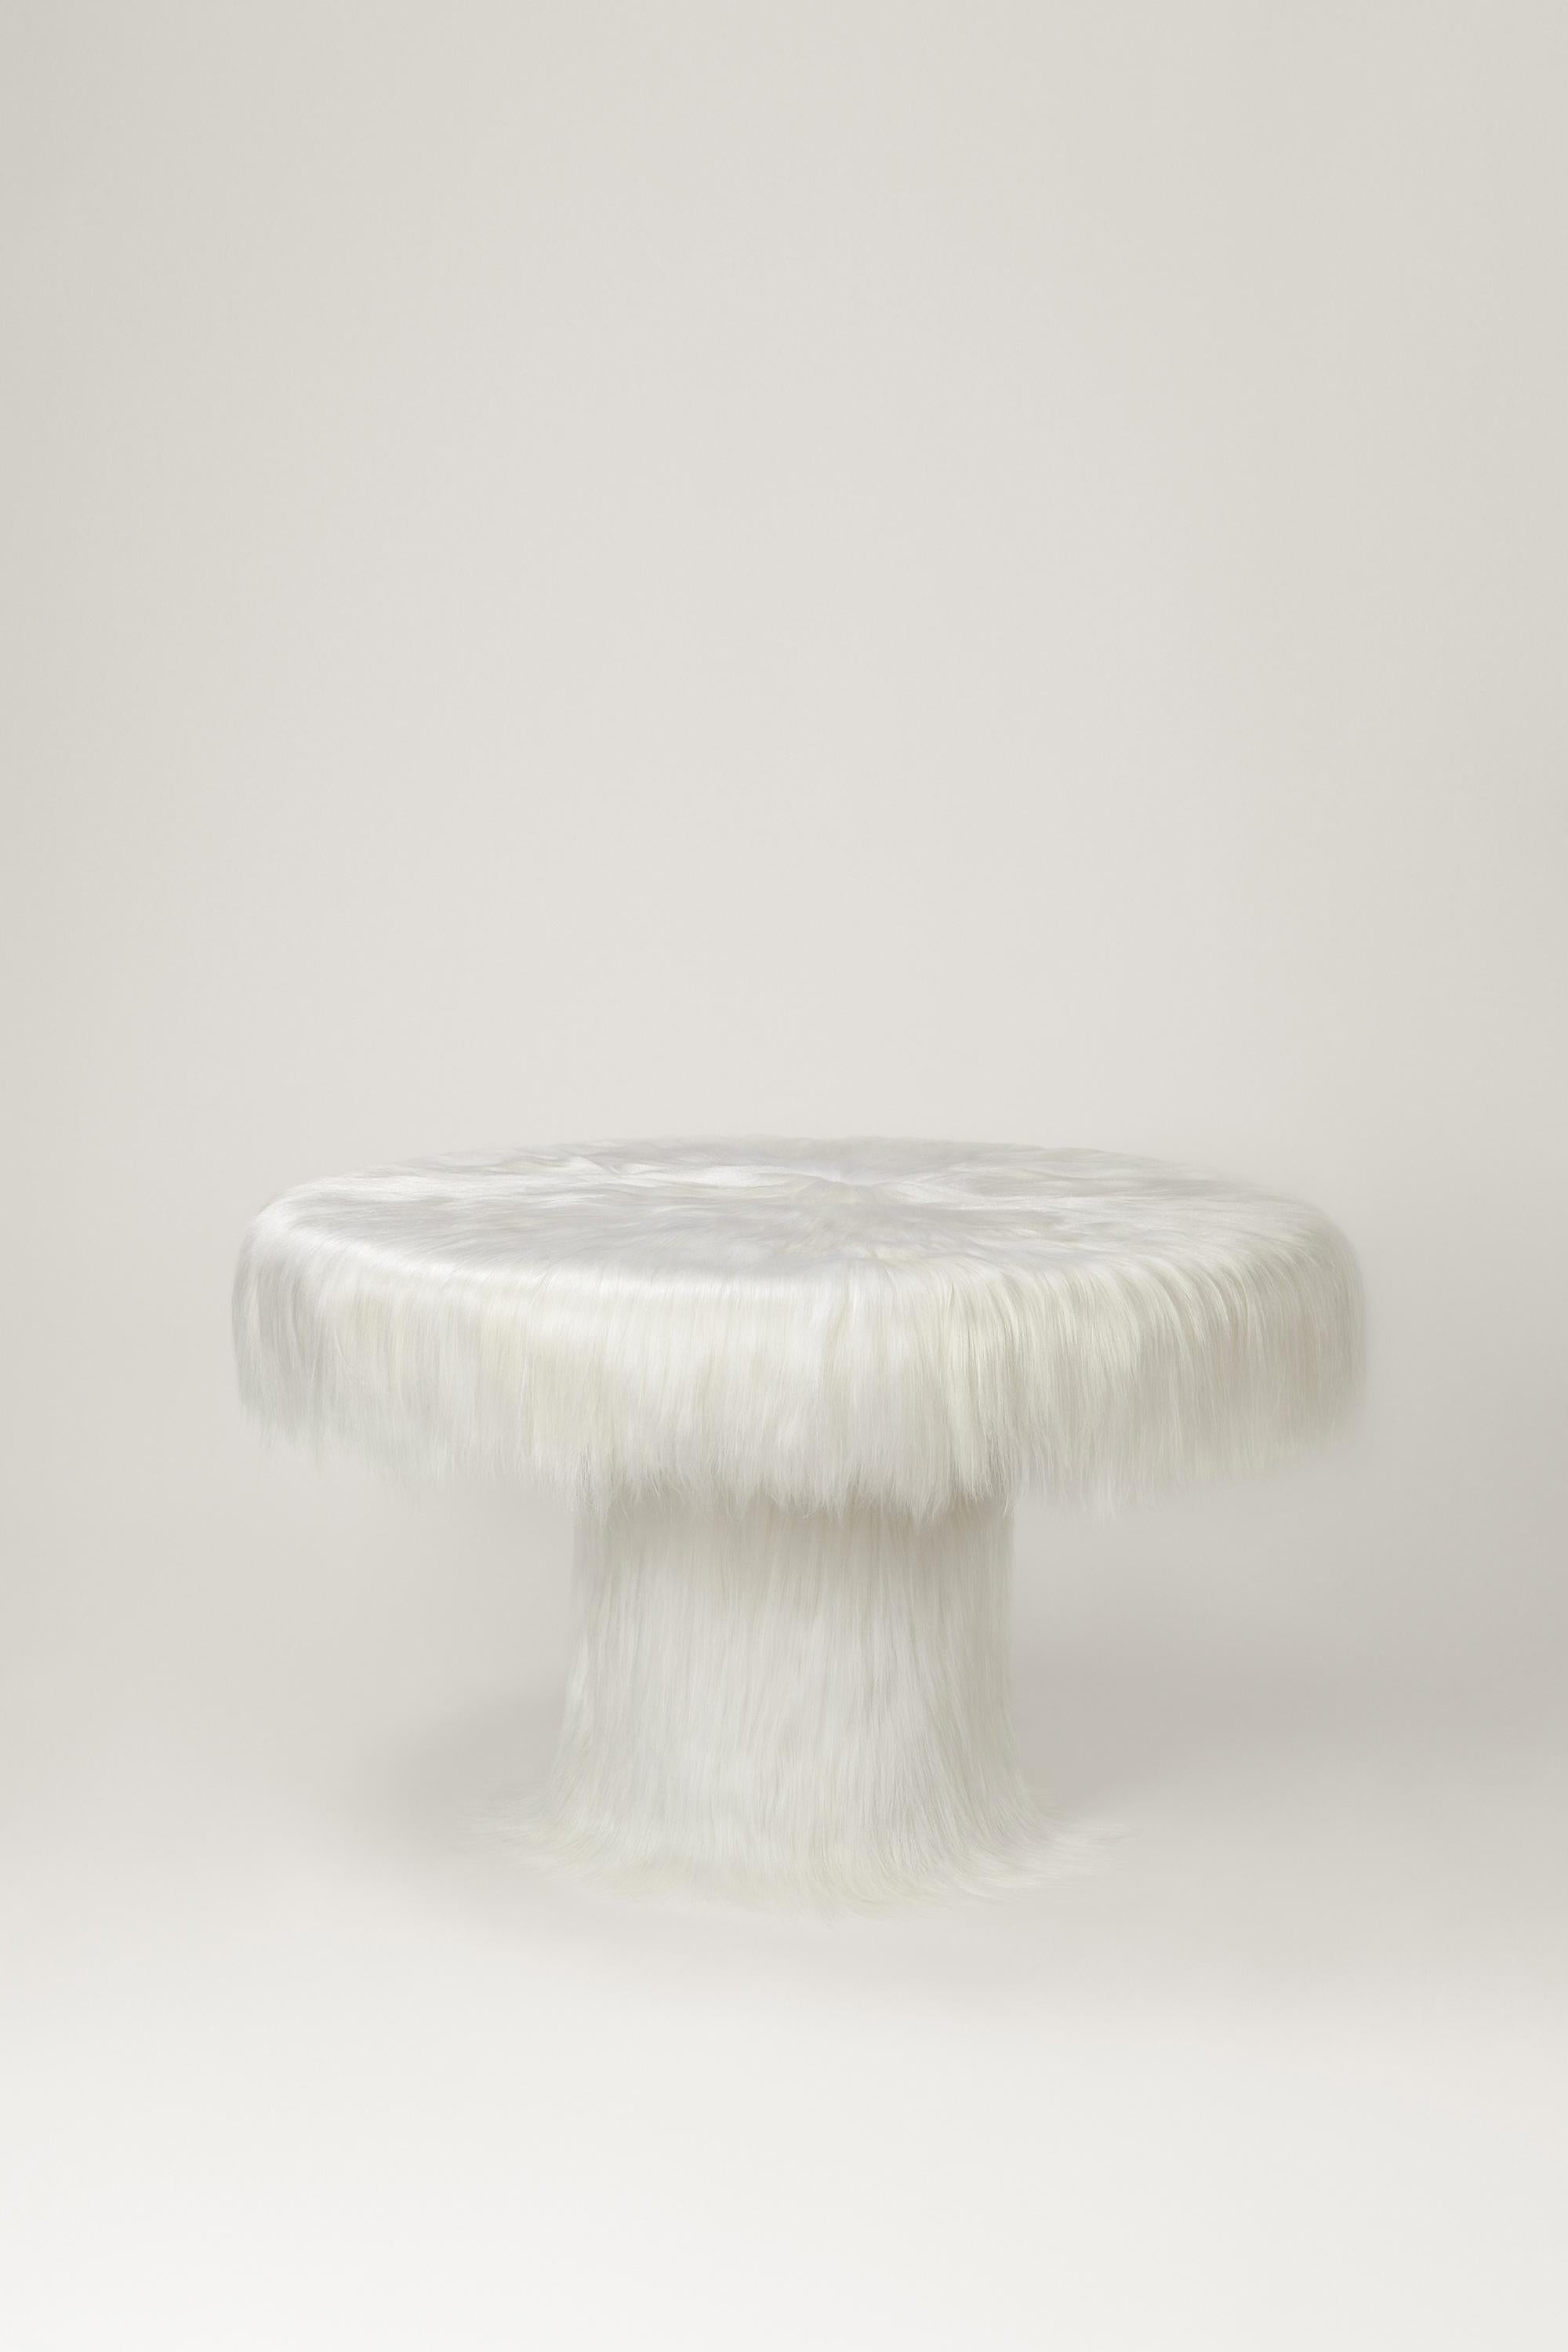 Raw Table von Atelier V&F, Rohtisch
Limitierte Auflage von 5+2AP Stücken.
Abmessungen: Ø 130 x H 76 cm.
MATERIALIEN: Ziegenlederabschnitte

Inspiriert von der Erdgöttin Gaia, will 